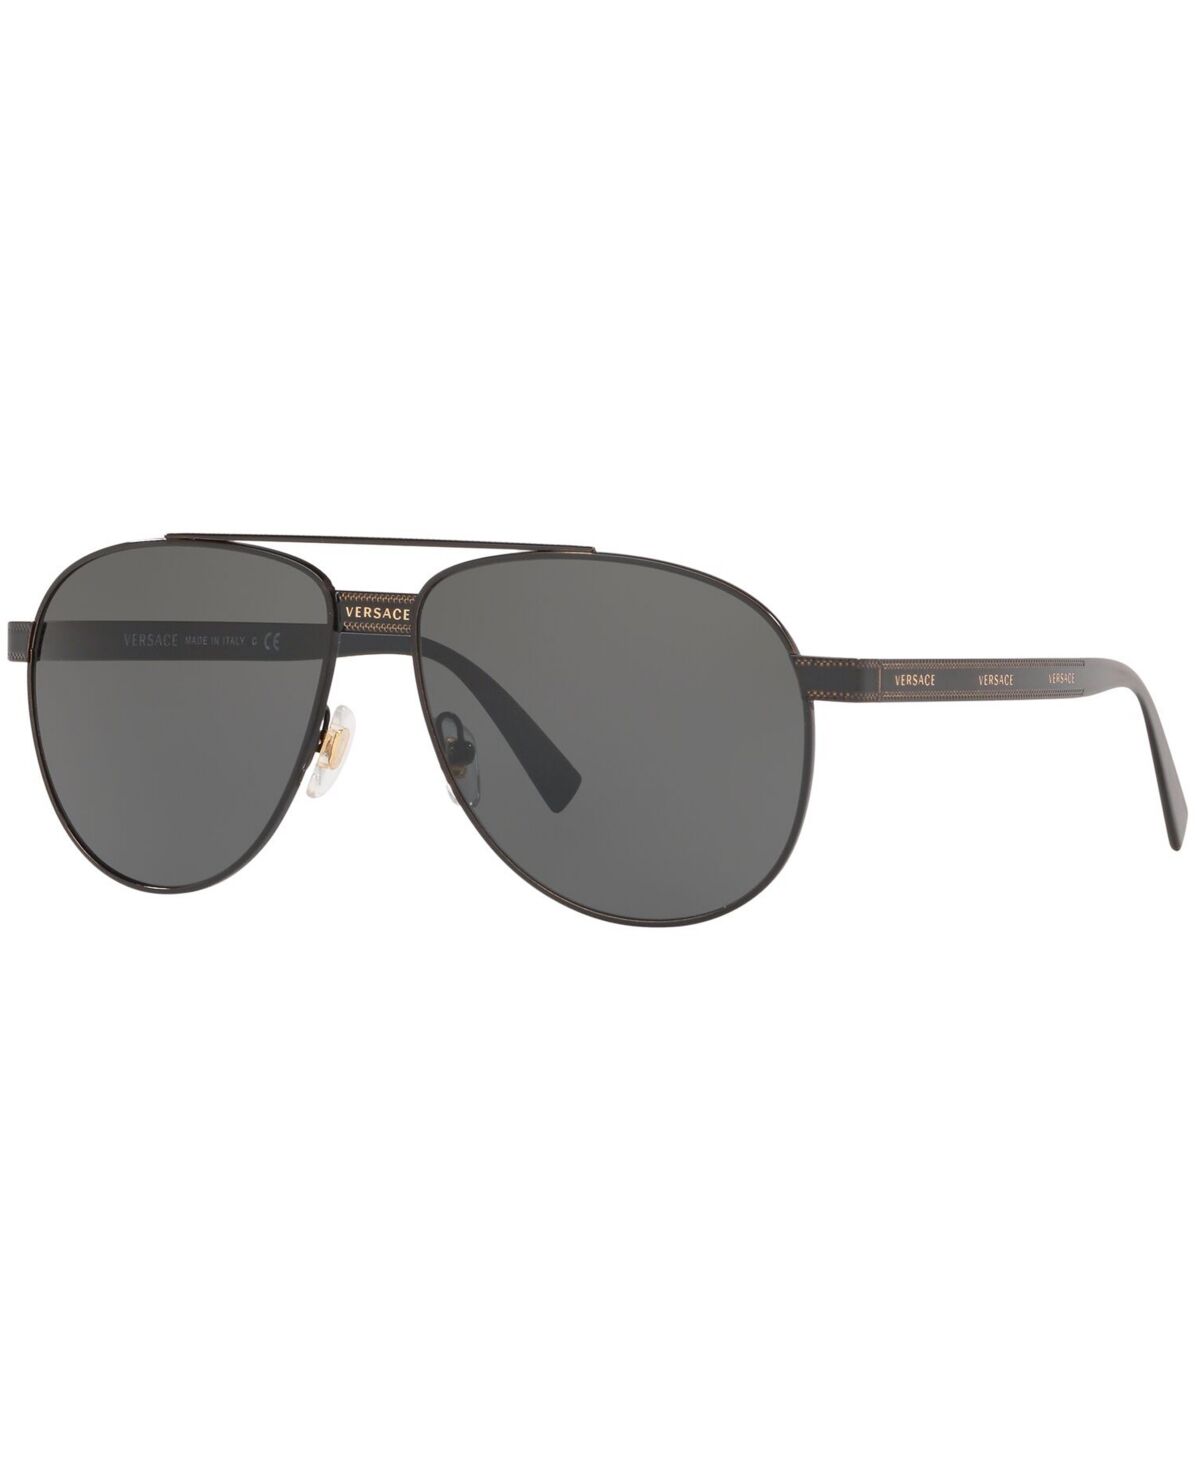 Versace Men's Sunglasses, VE2209 - BLACK/GREY